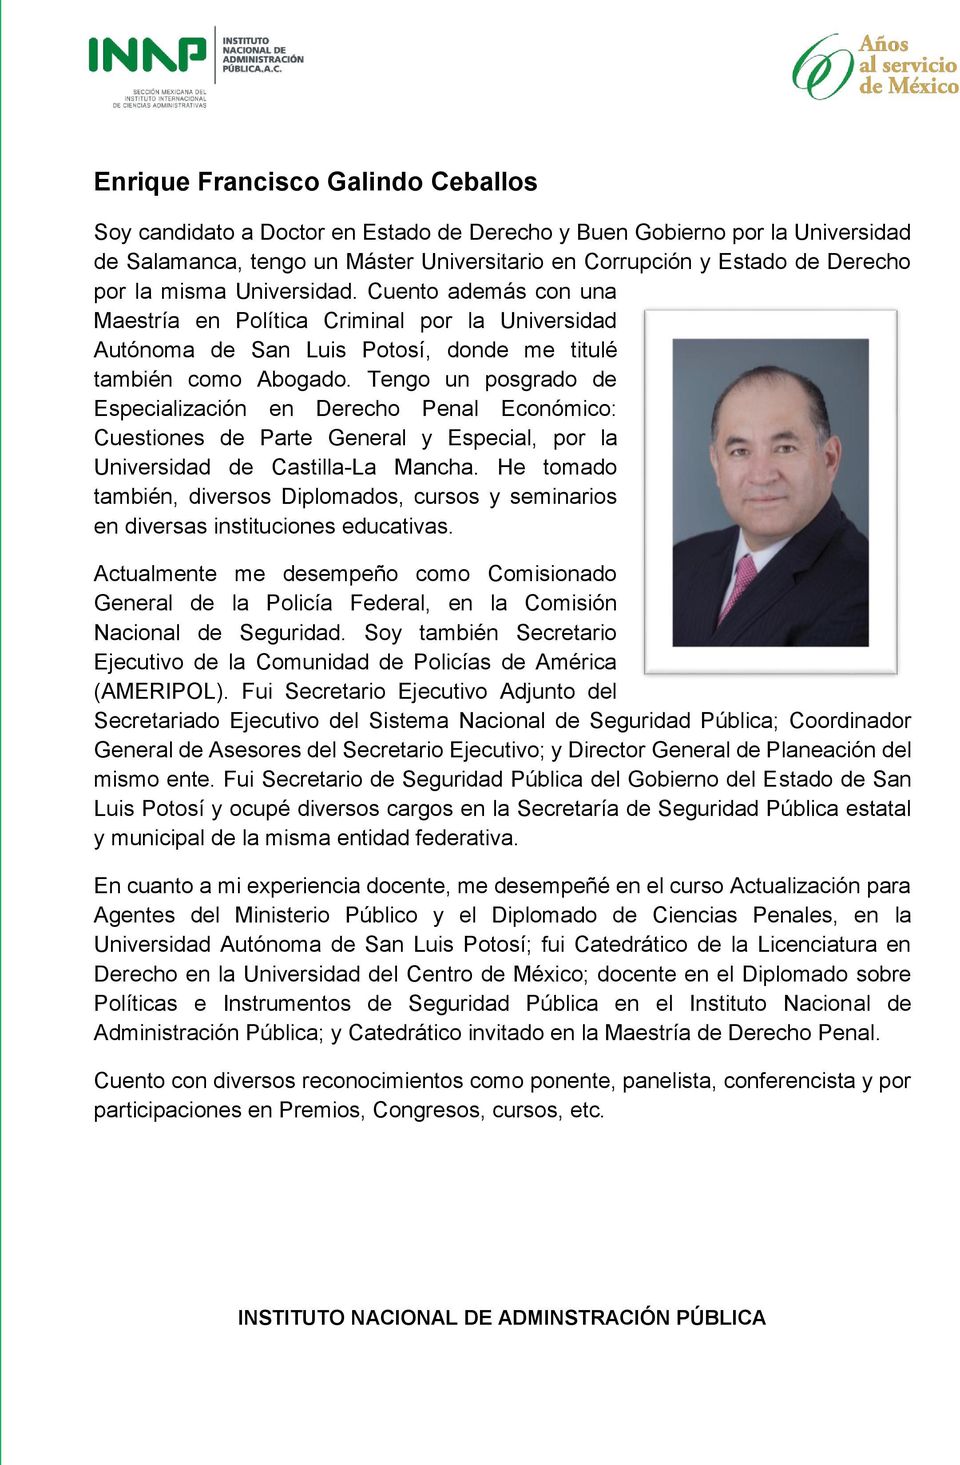 Tengo un posgrado de Especialización en Derecho Penal Económico: Cuestiones de Parte General y Especial, por la Universidad de Castilla-La Mancha.